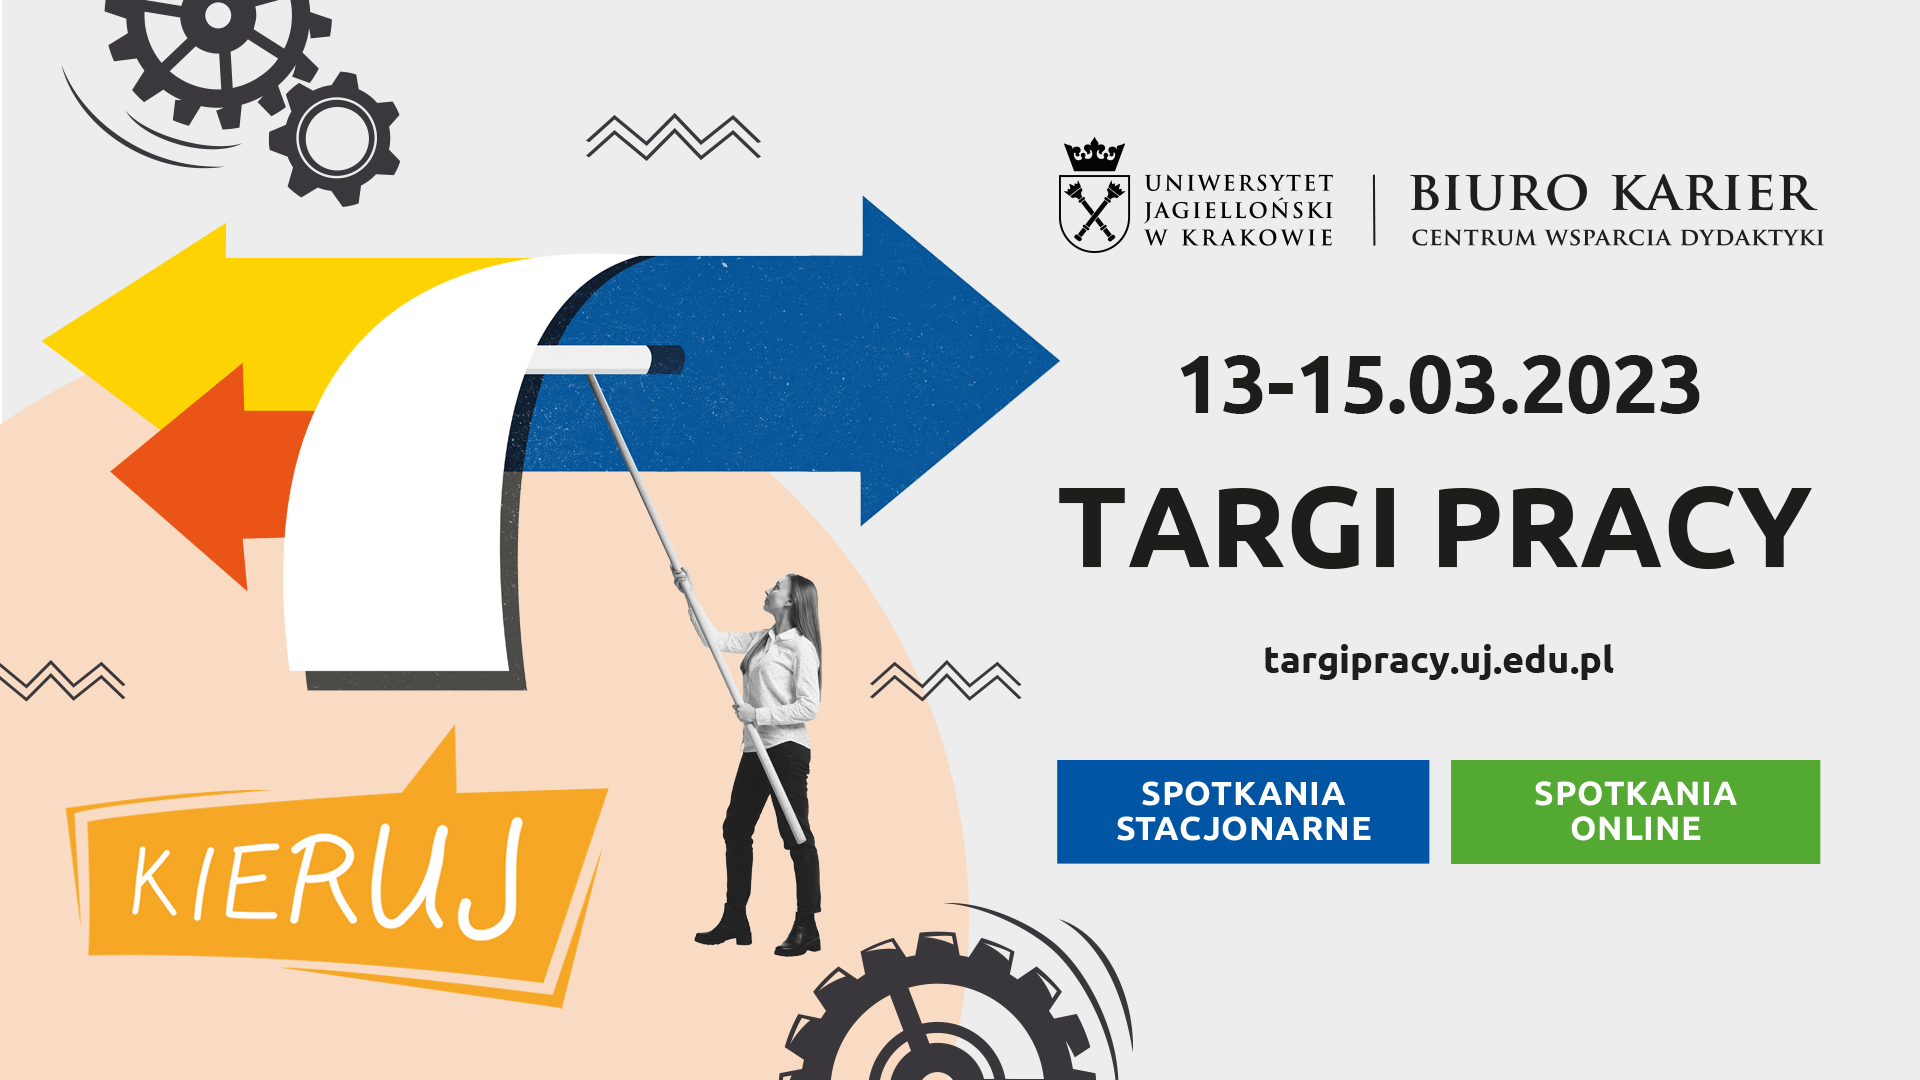 Targi Pracy na Uniwersytecie Jagiellońskim (13-15 marca 2023 r.)